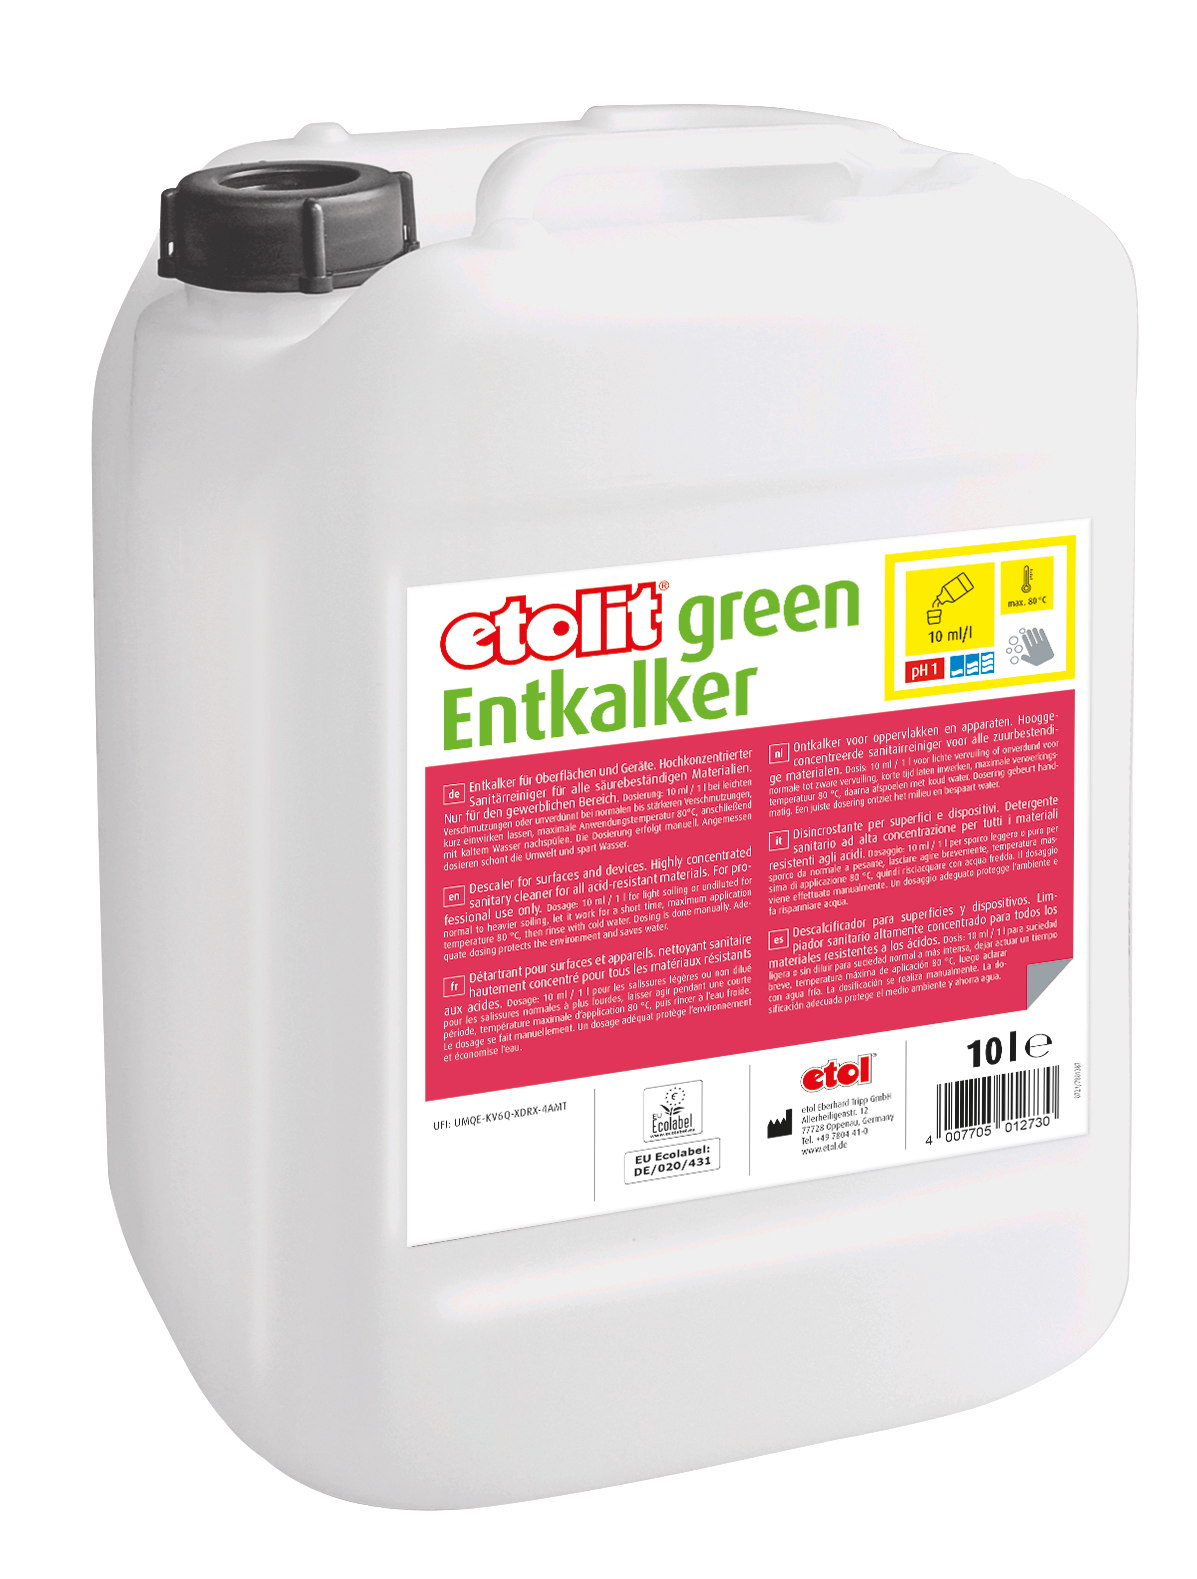 etolit green Entkalker